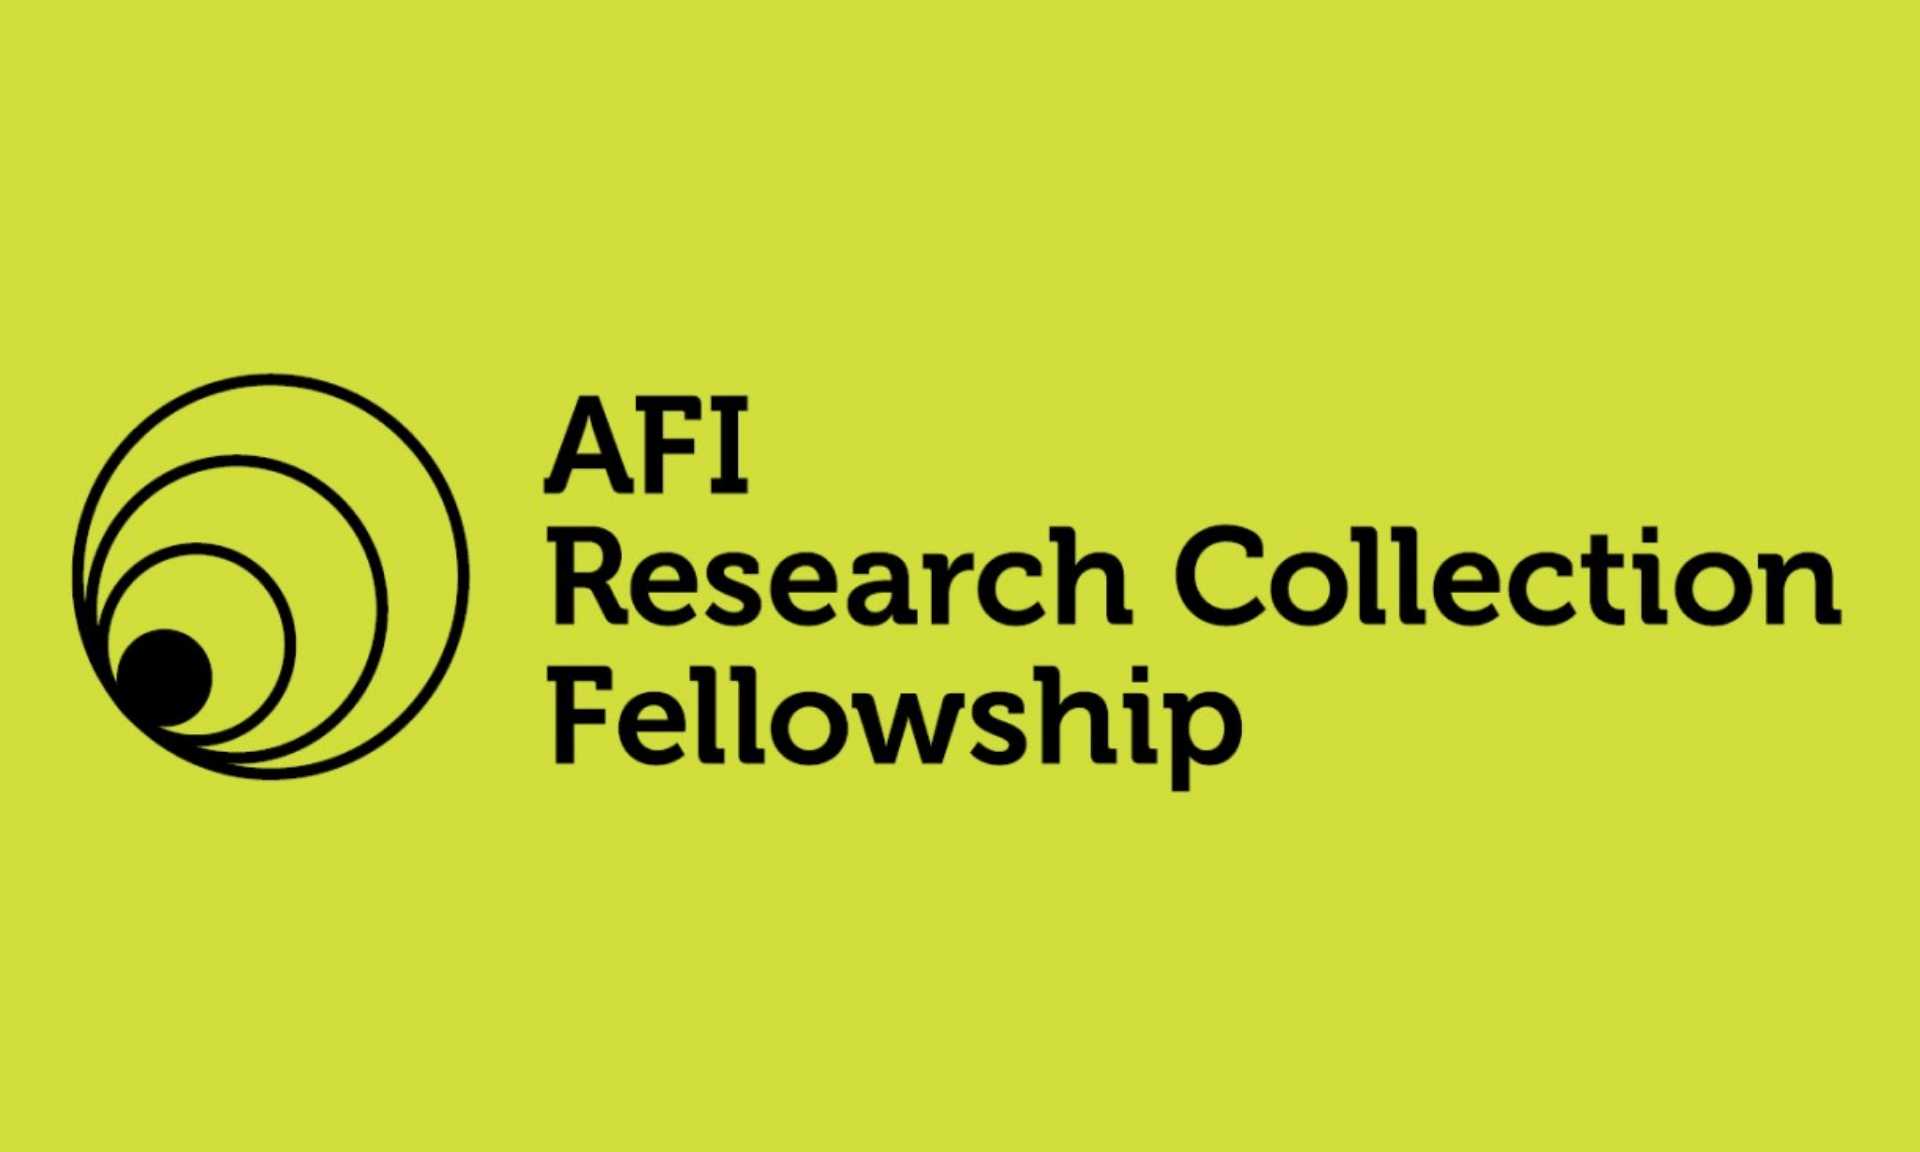 AFI Research Collection Fellowship logo